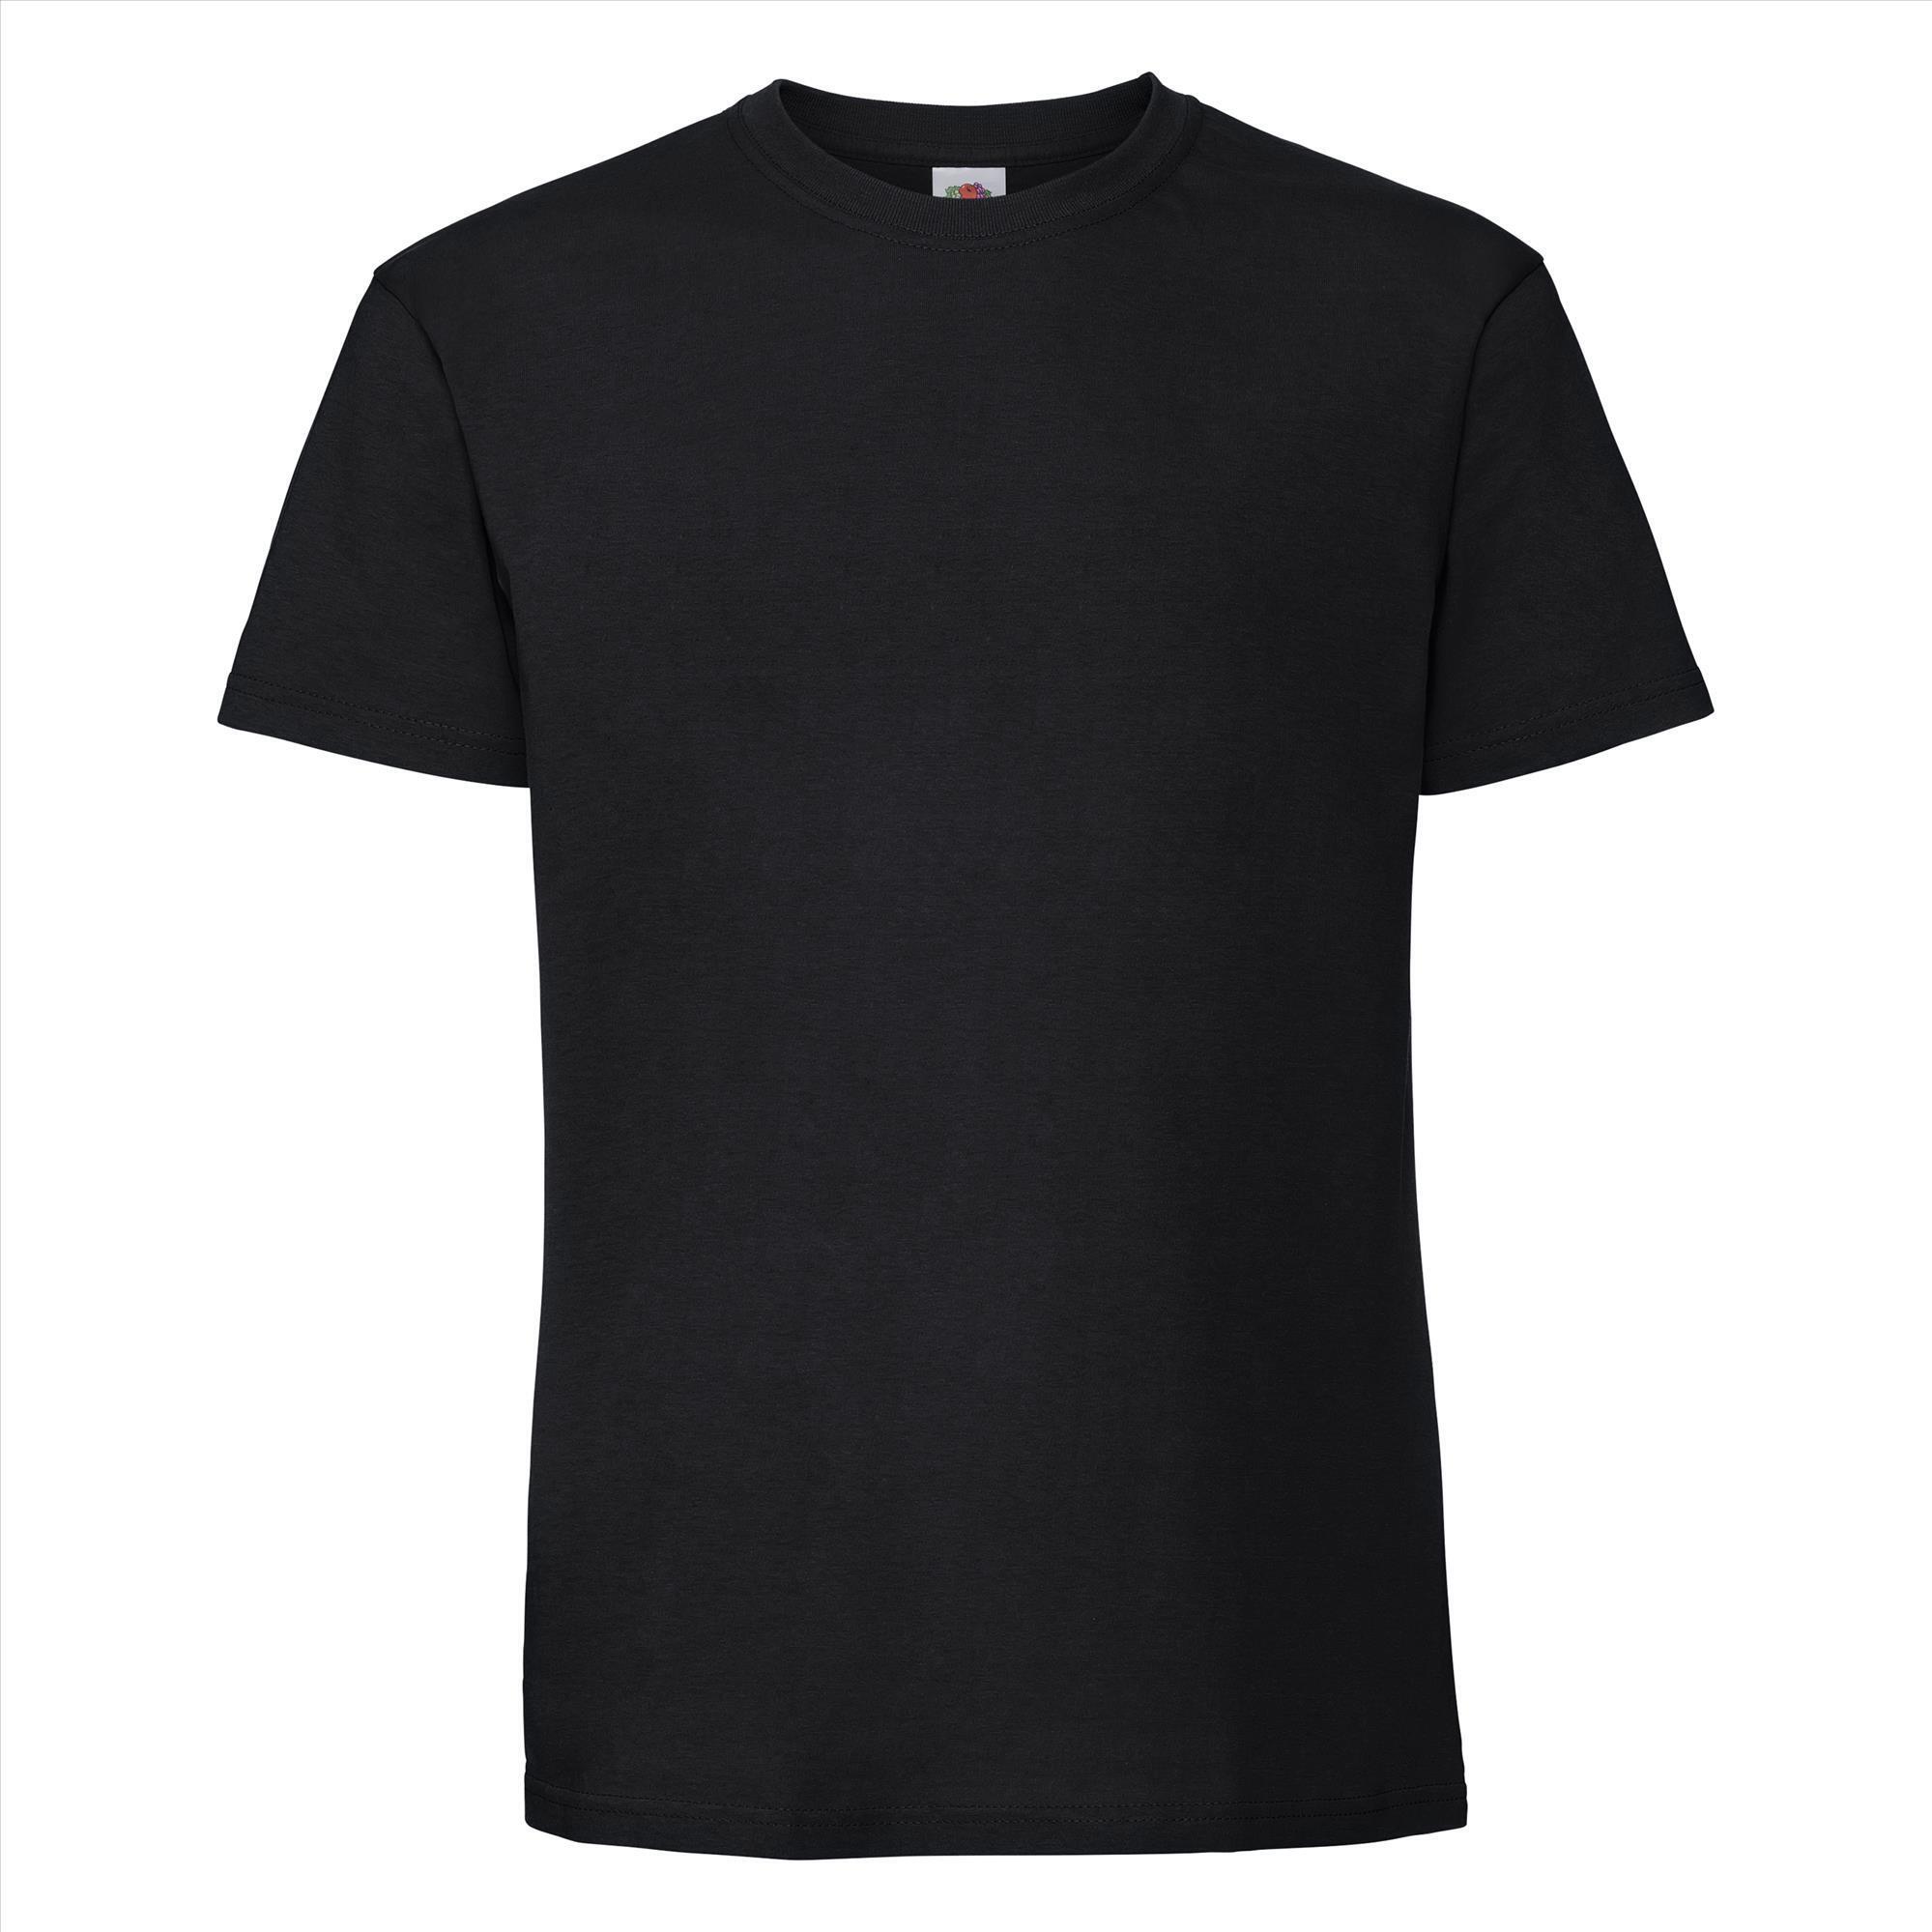 T-shirt zwart korte mouwen voor mannen bedrukbaar te personaliseren